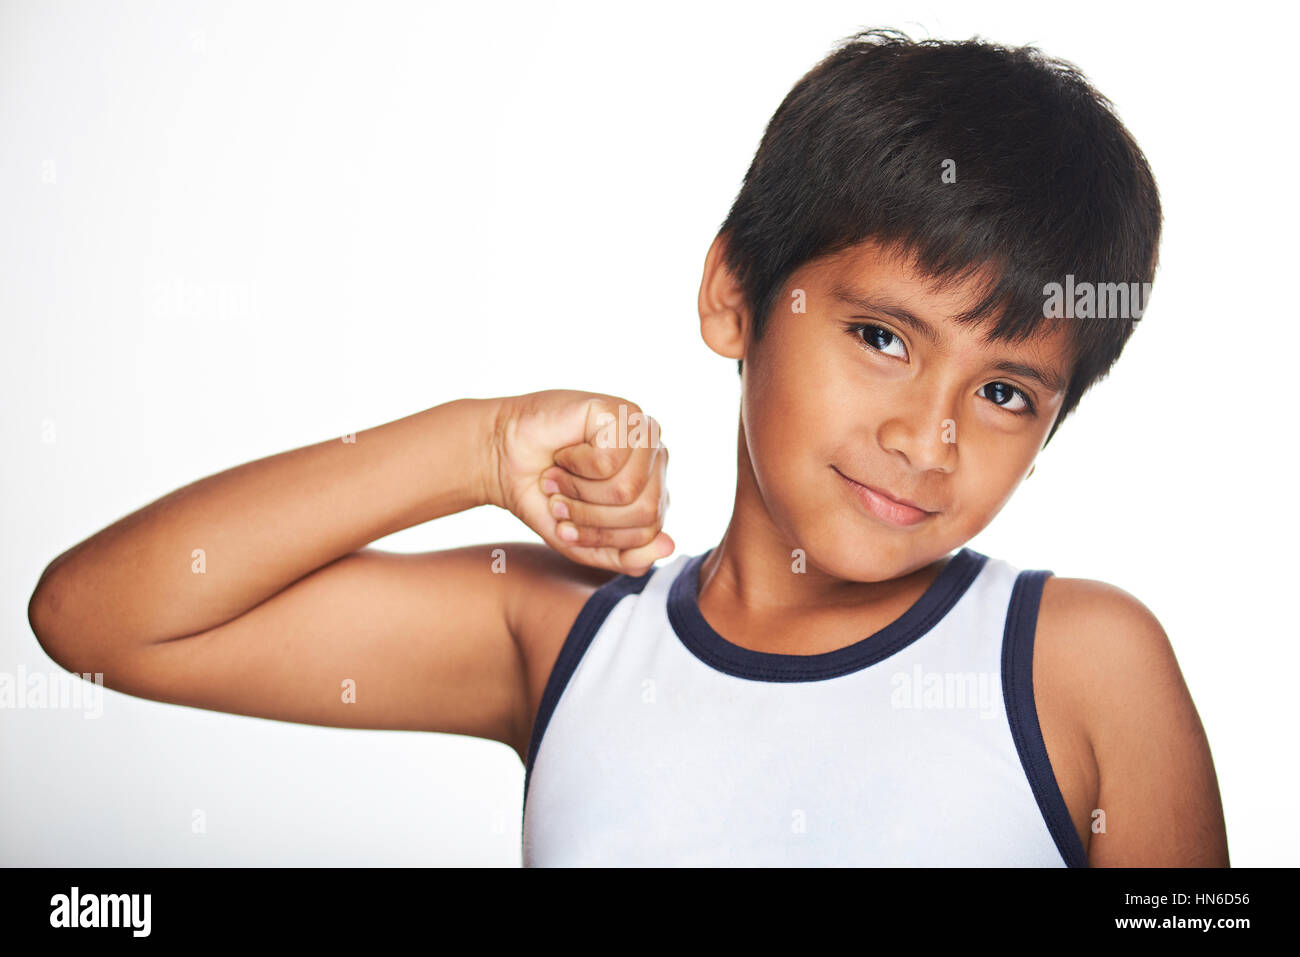 Hispanic boy showing muscles isolé sur fond blanc Banque D'Images